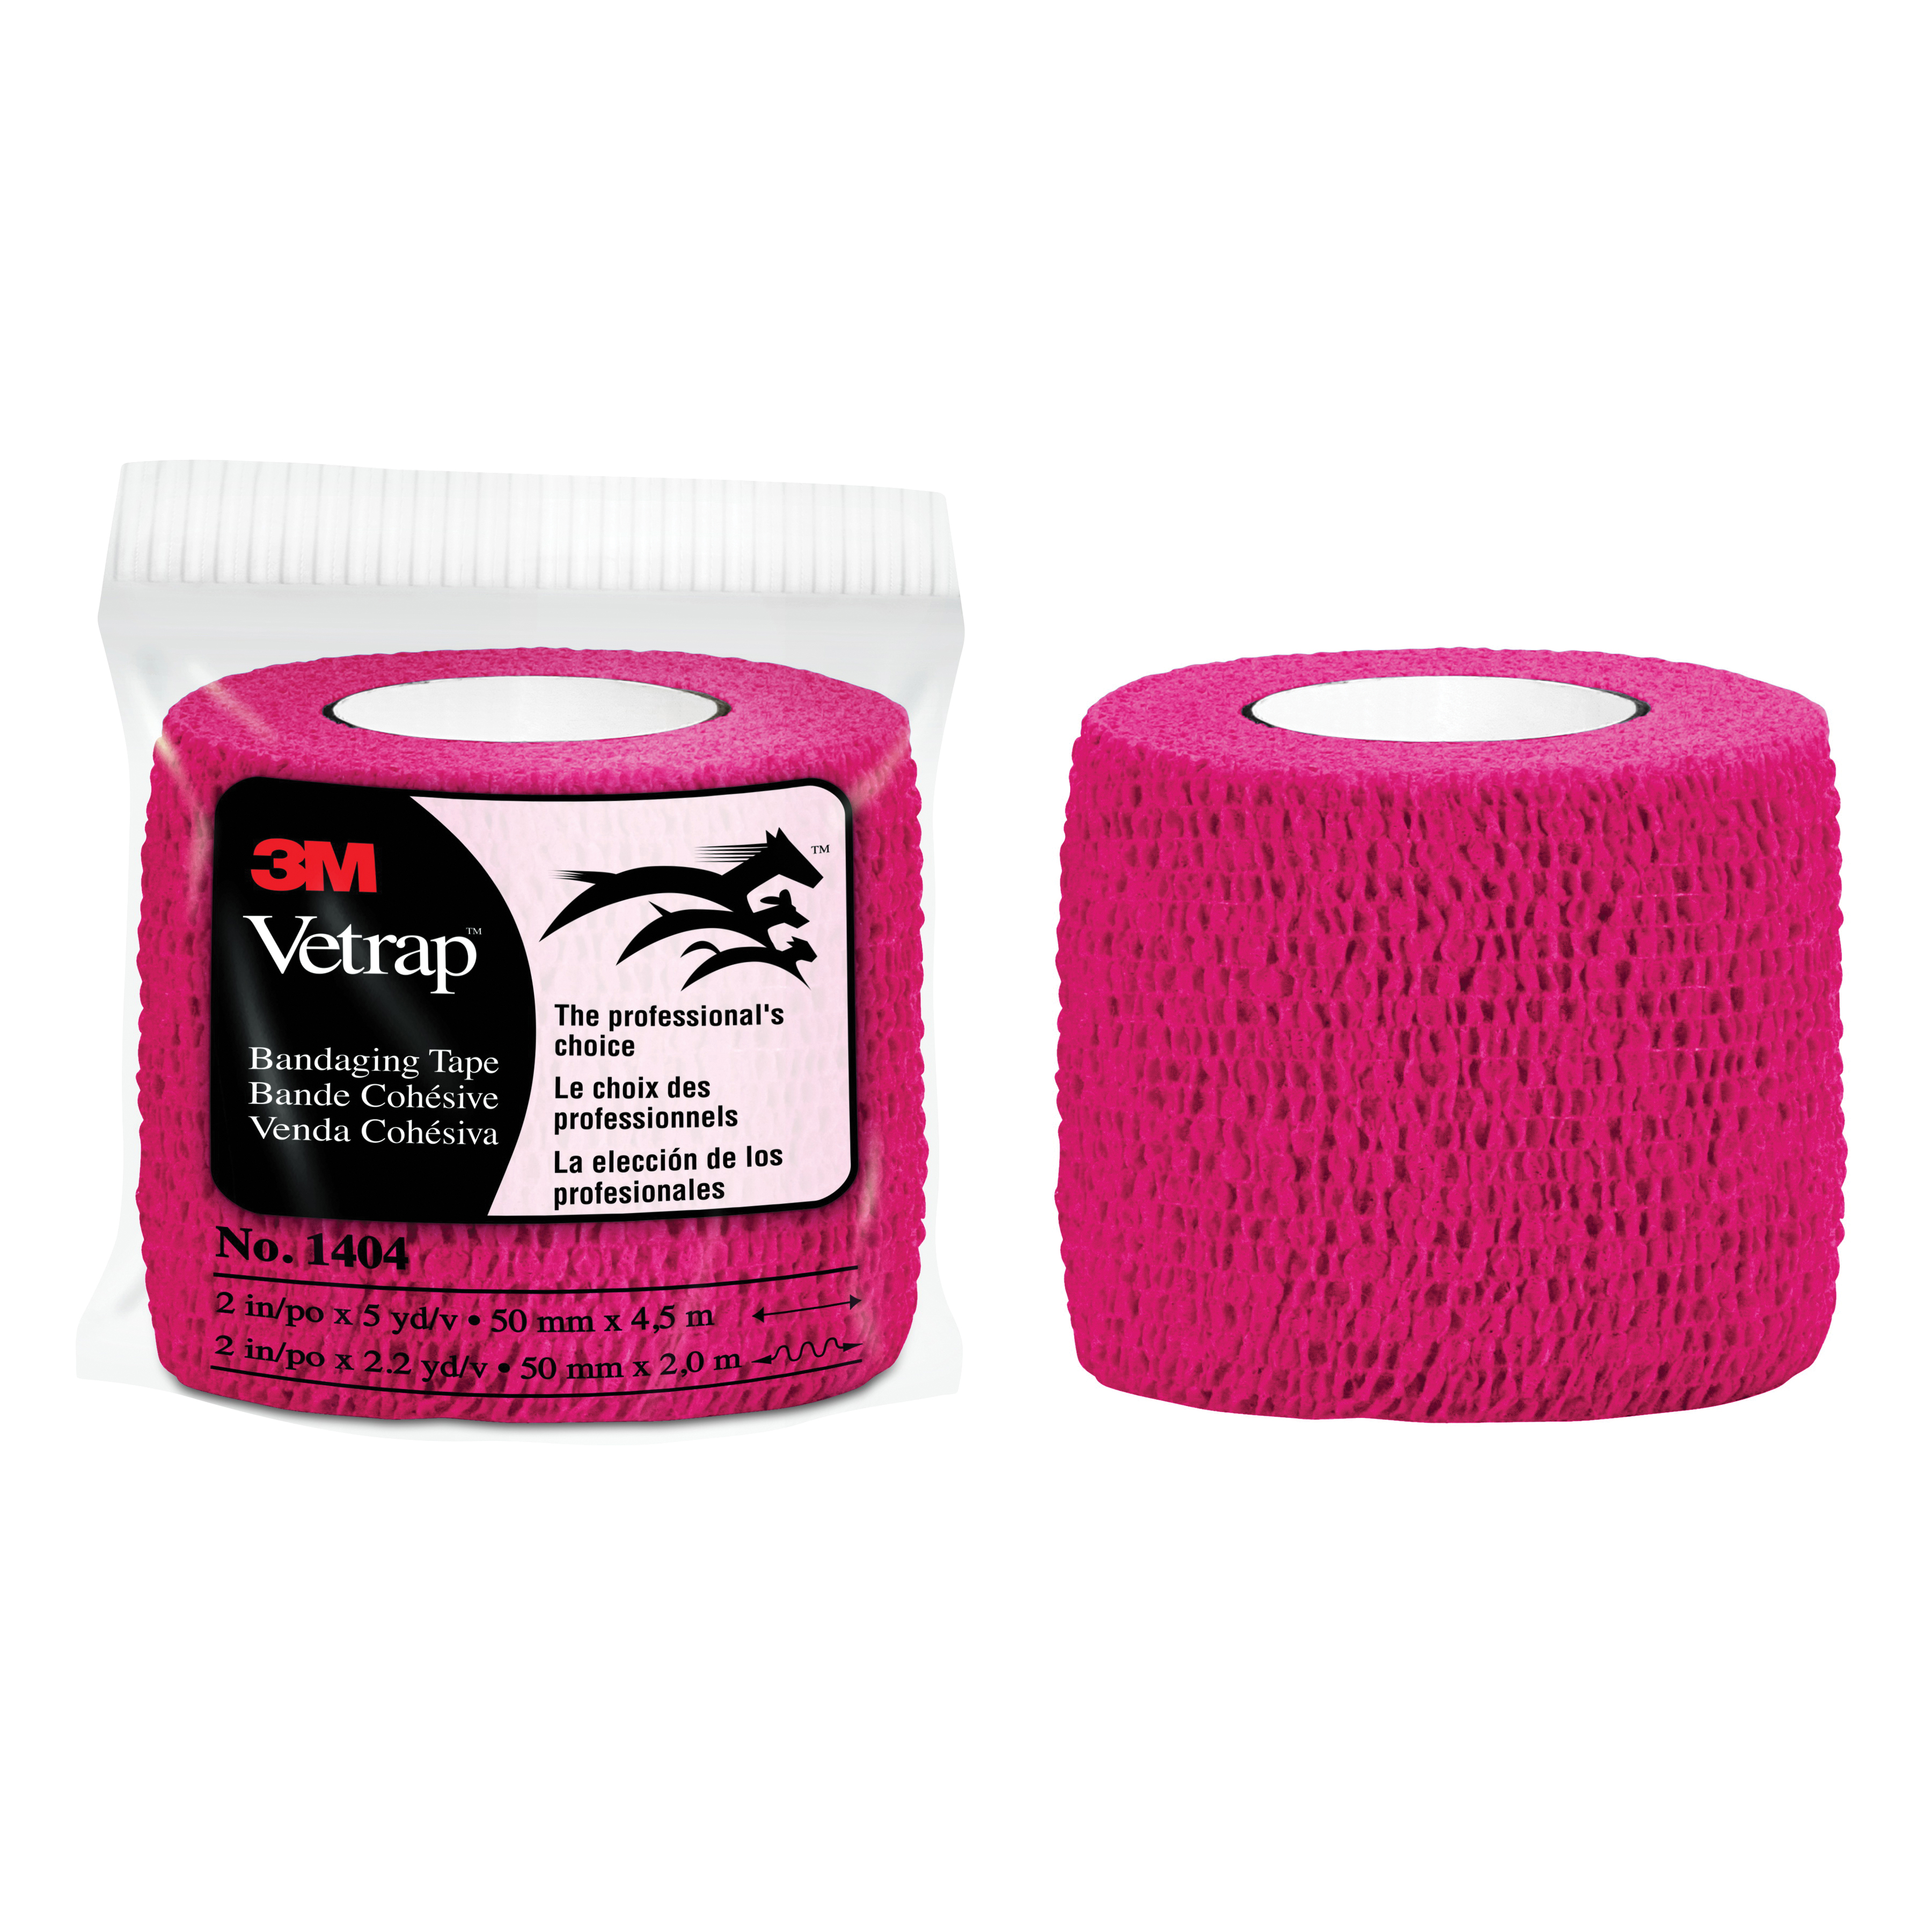 3M™ Vetrap™ 051115-04857 1404 Bandaging Tape, Self-Adherent Elastic Wrap, Red